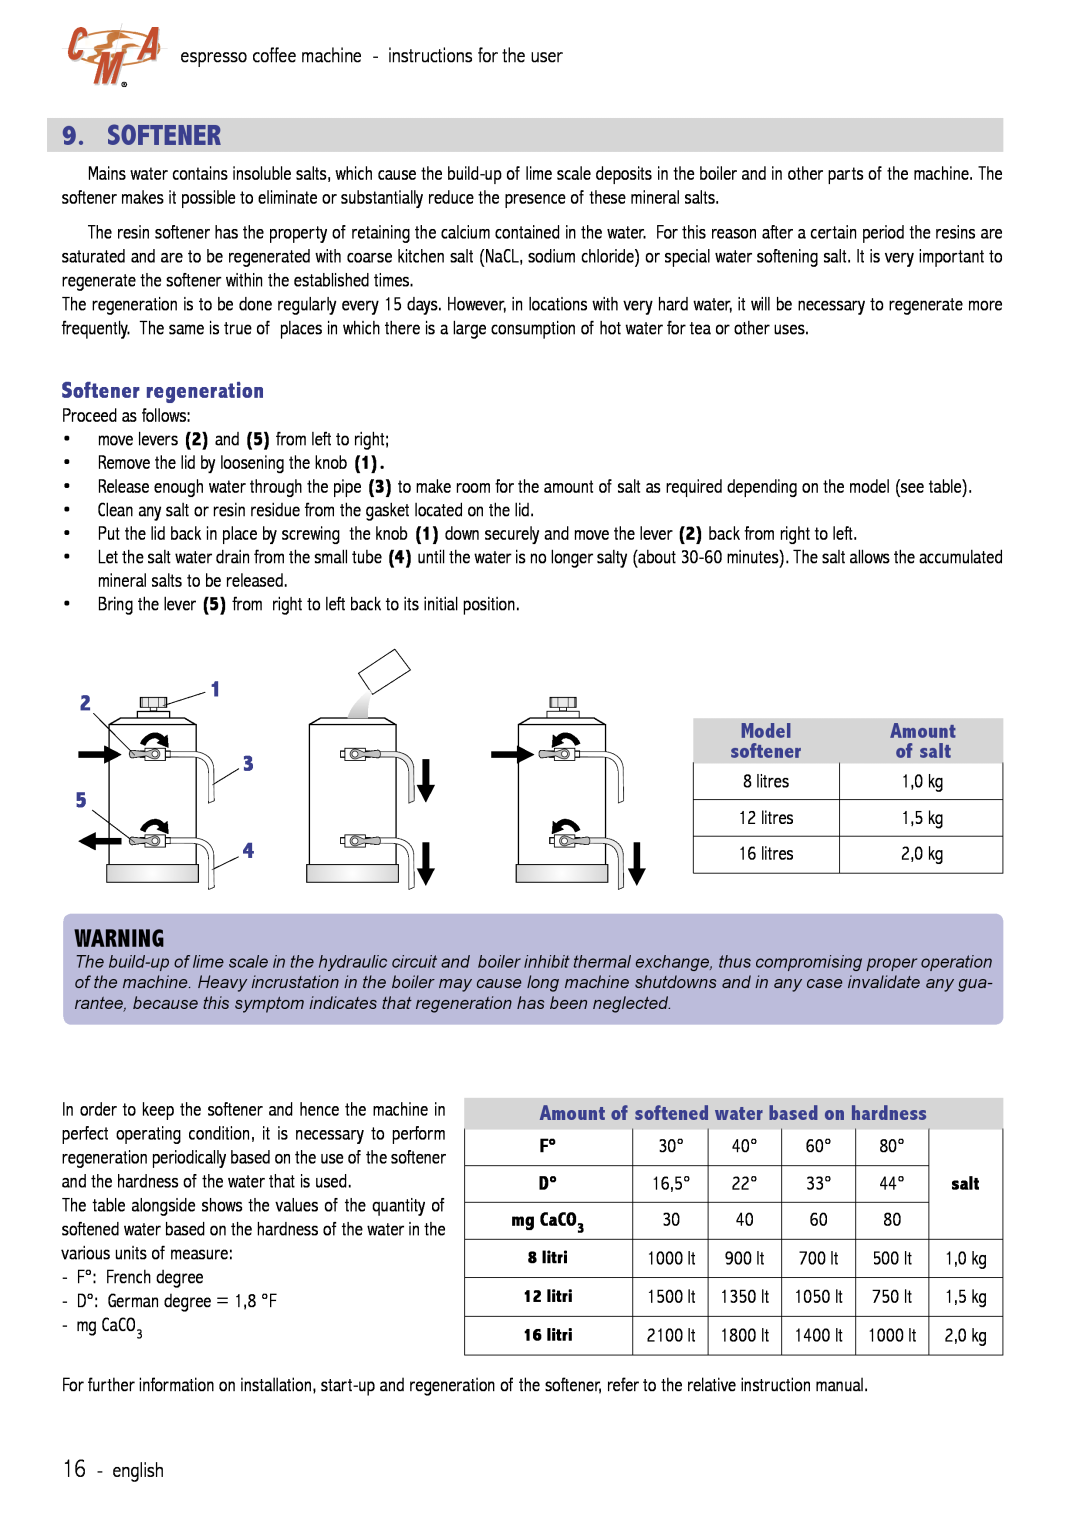 Cecilware VAE-J1 manual Softener regeneration, Amount of softened water based on hardness, e nglish 